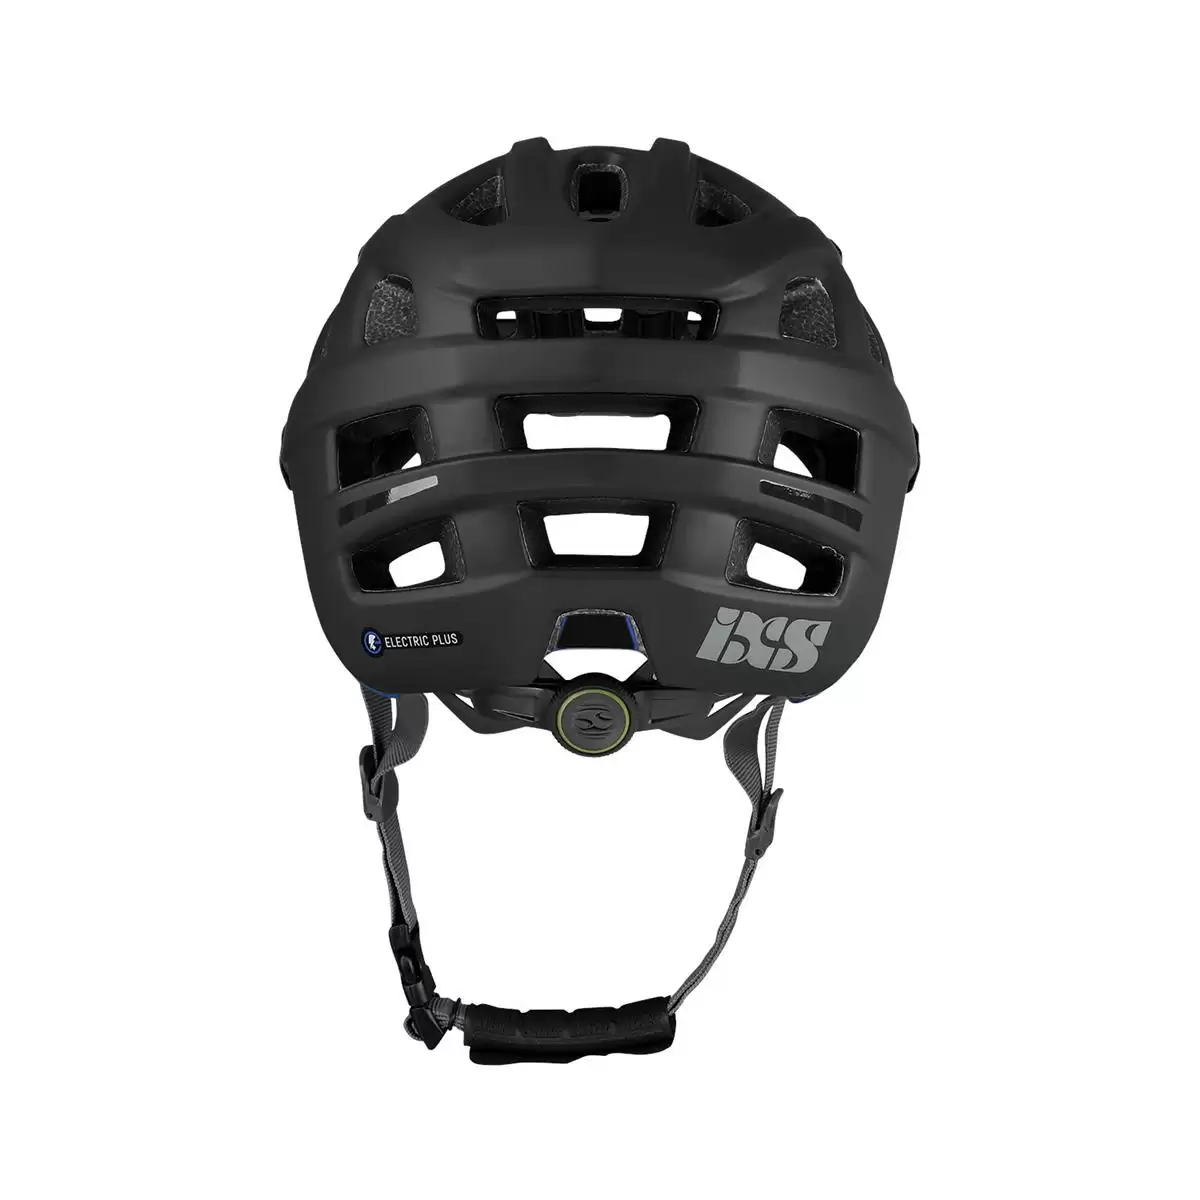 Henduro Helmet Trail Evo E-Bike Edition Black Size S/M (54-58cm) #3